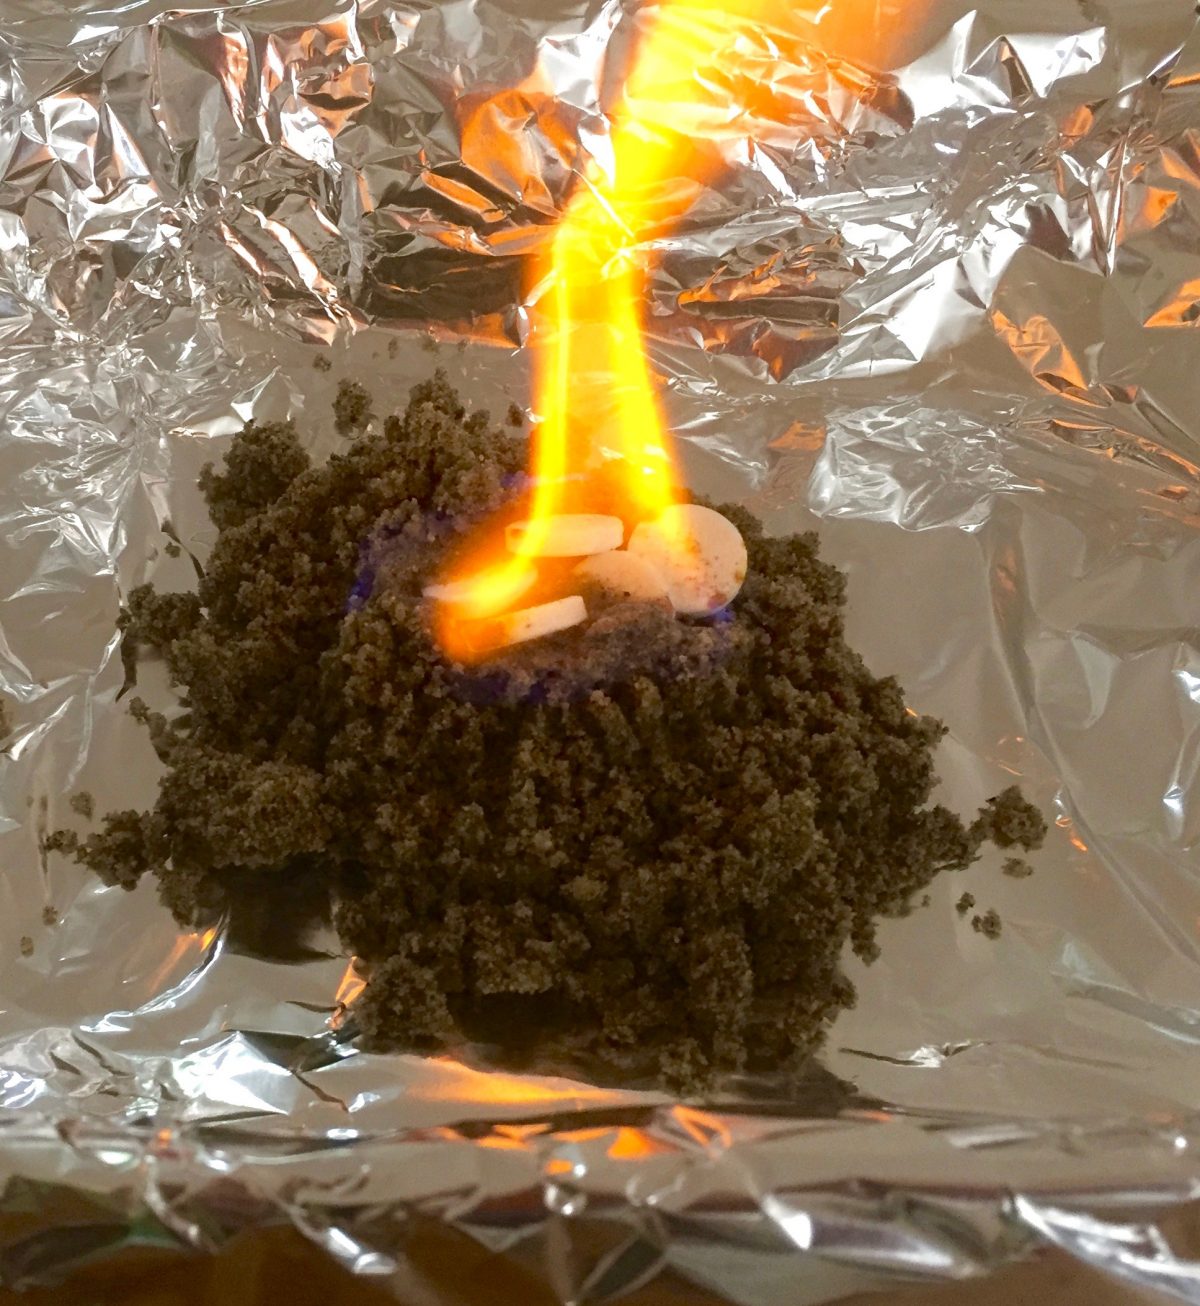 Orange leuchtende Flamme über einem Sandhäufchen. Alufolie zum Schutz druntergelegt.